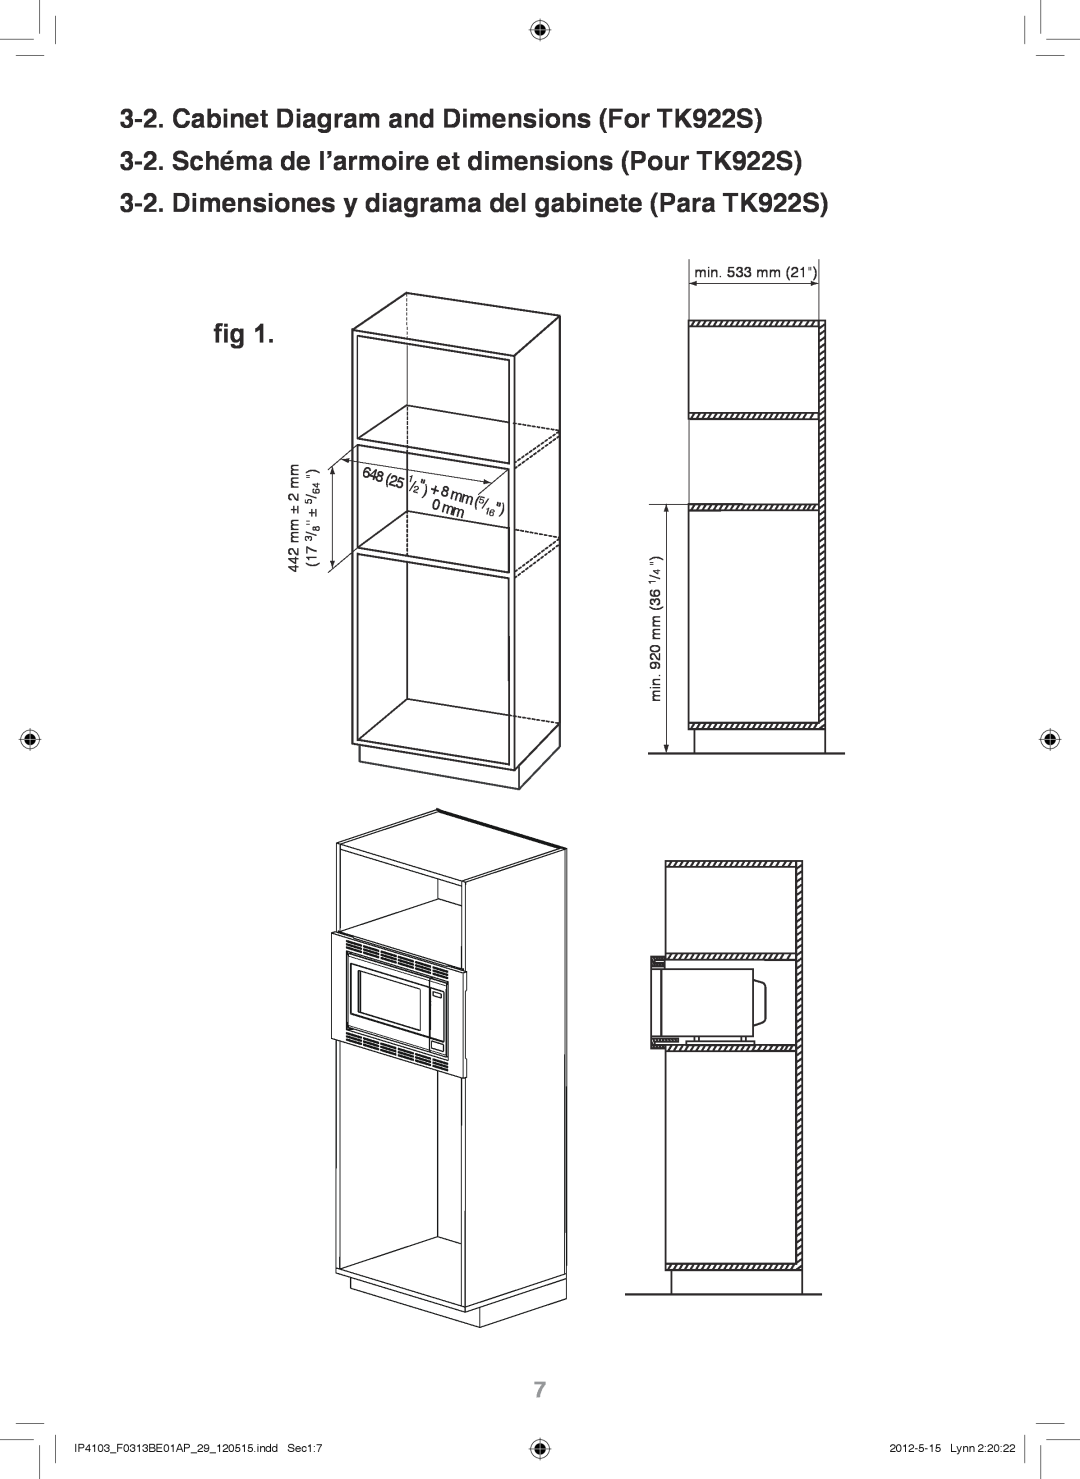 Panasonic NN-TK722S Cabinet Diagram and Dimensions For TK922S, 3-2.Schéma de l’armoire et dimensions Pour TK922S 